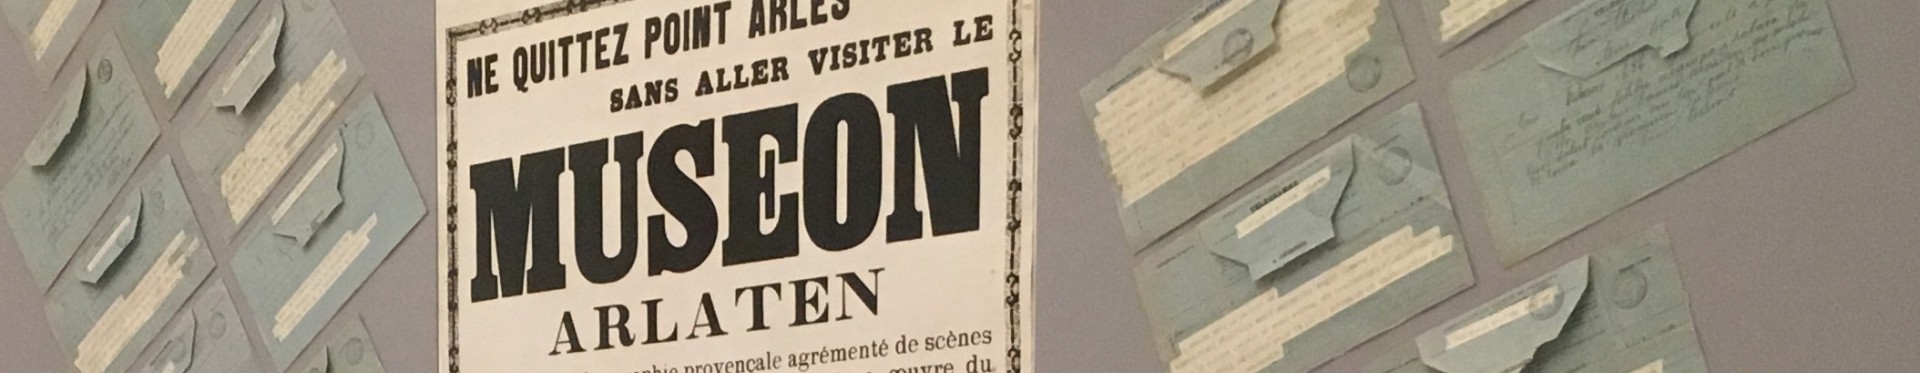 Télégrammes de félicitations reçus par Frédéric Mistral pour l'ouverture du Museon Arlaten première version